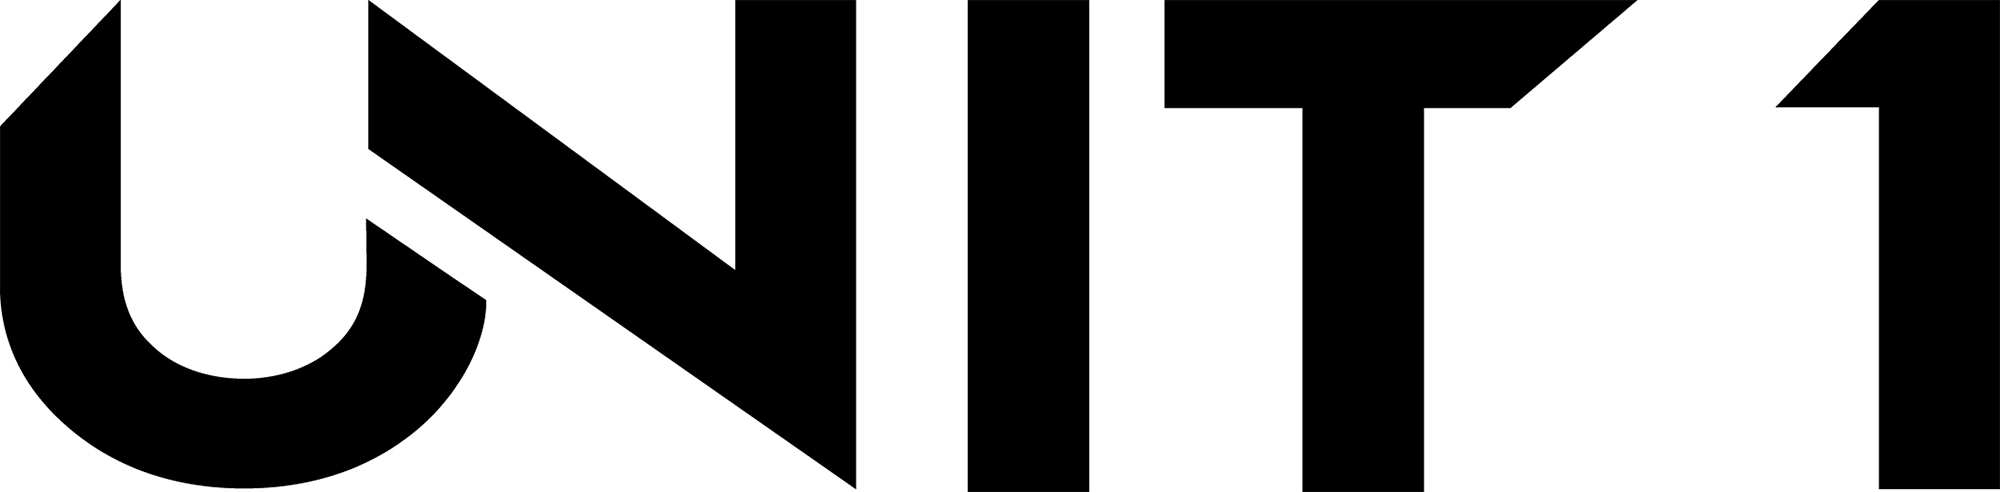 unit 1 logo .png